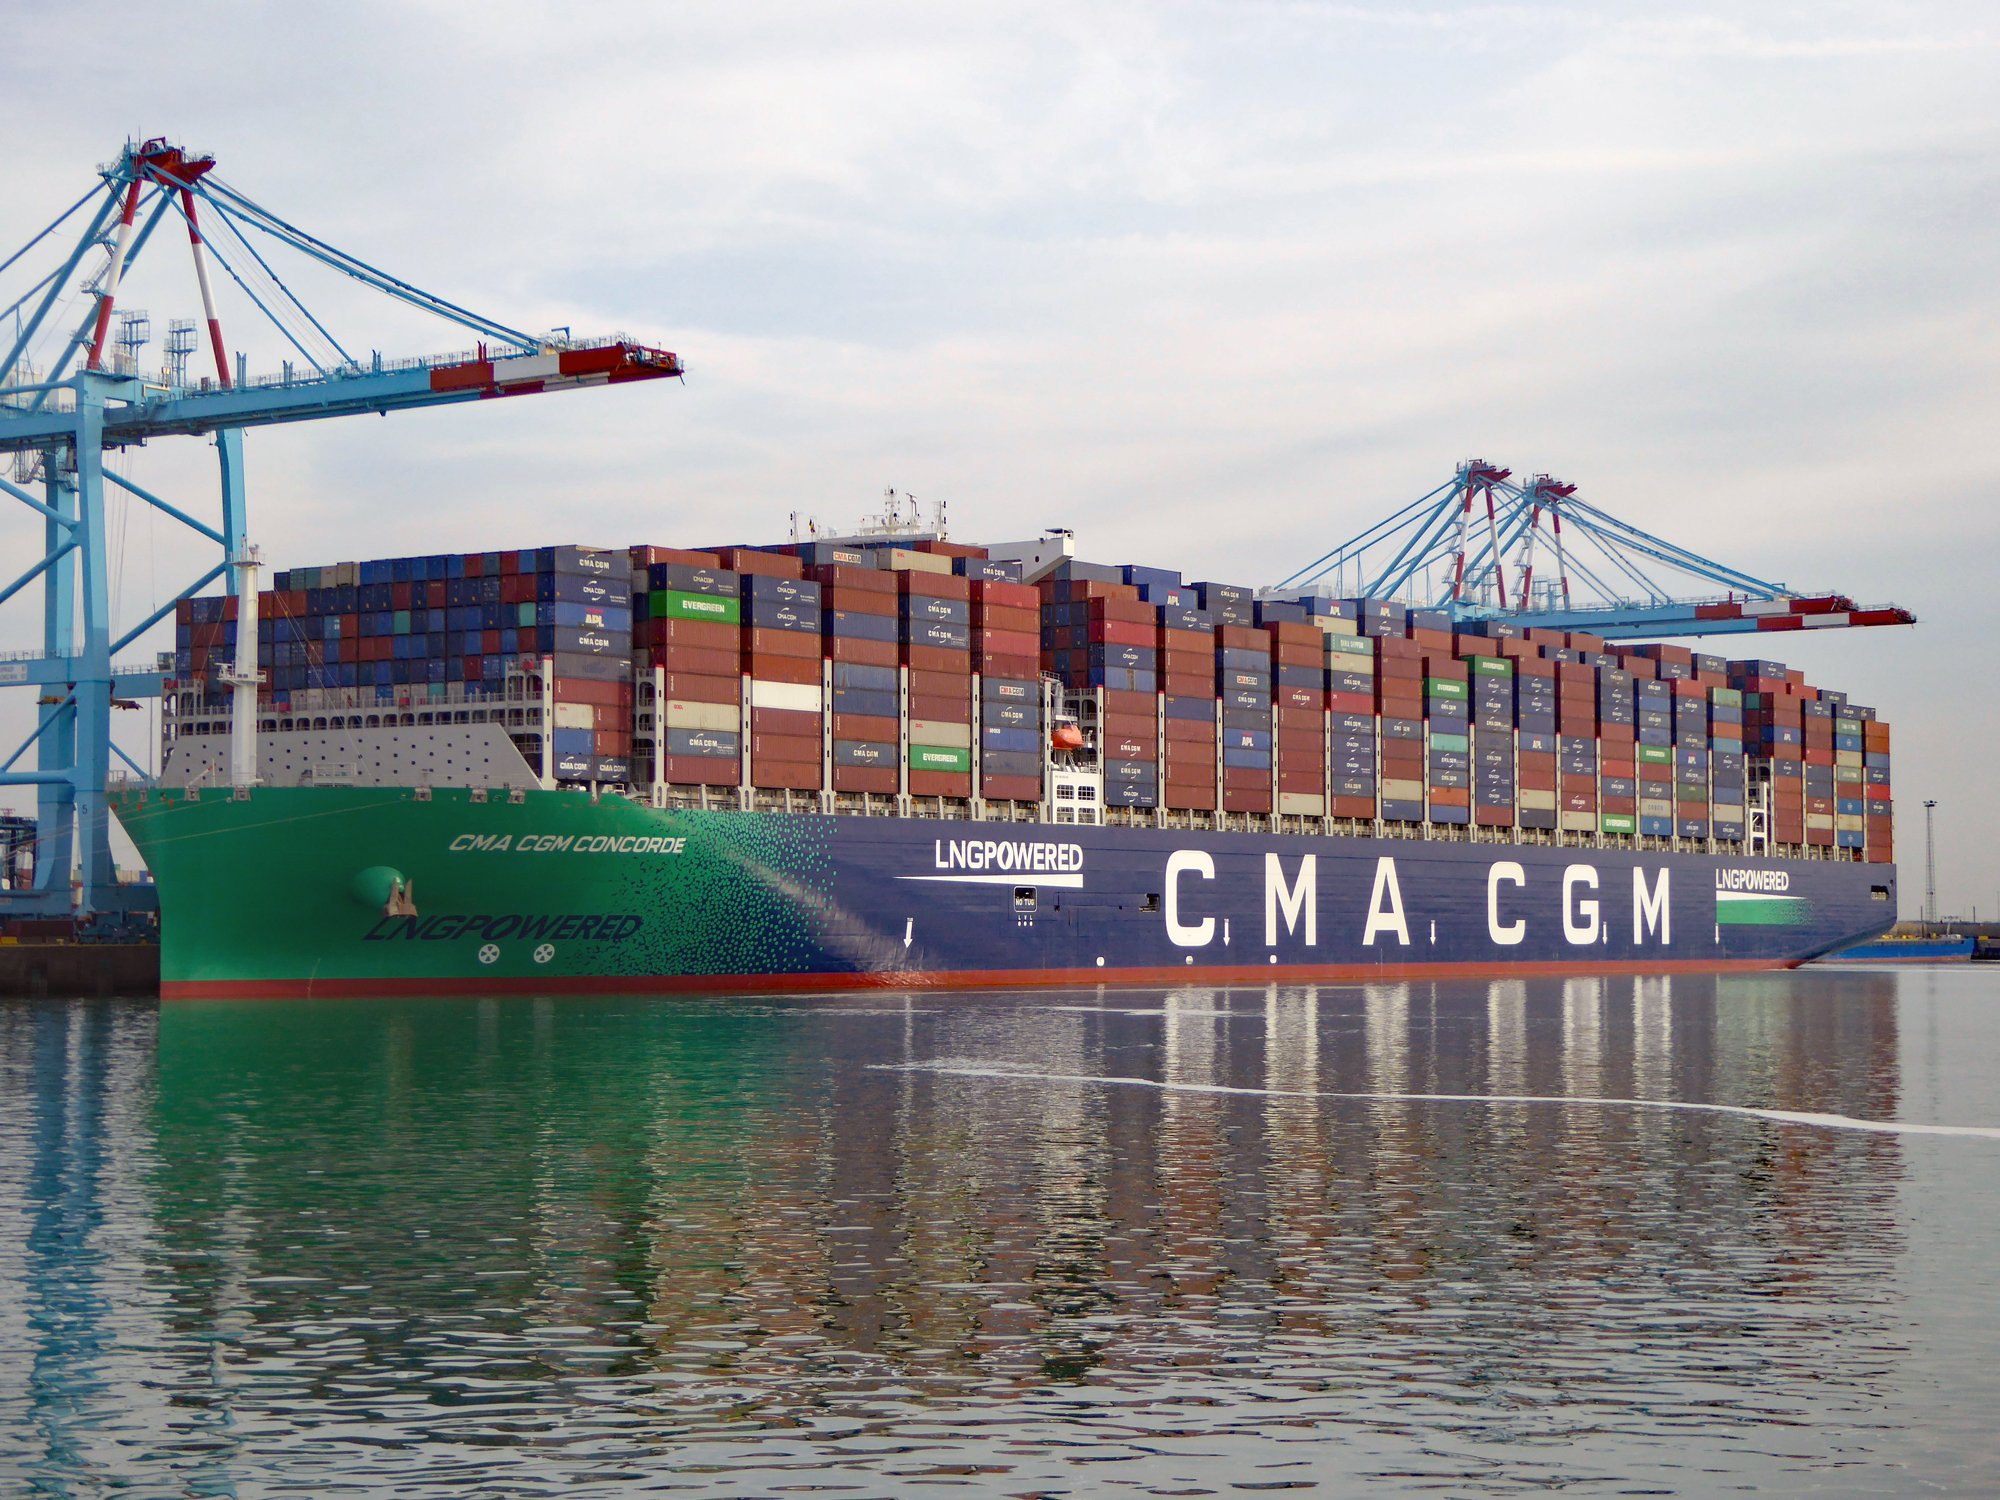     La CMA-CGM annonce le maintien de son aide au conteneur jusqu'en décembre

